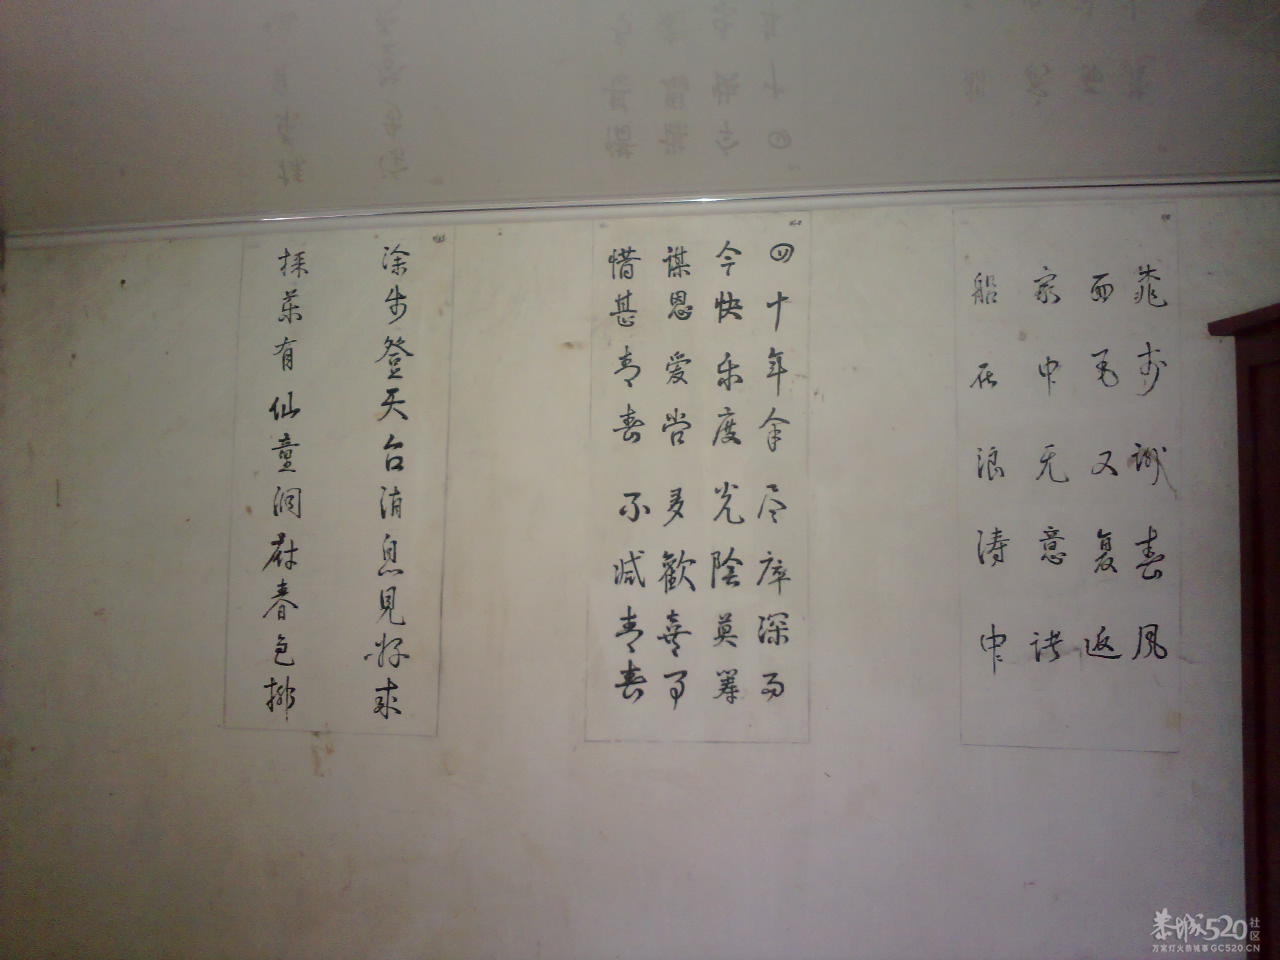 在邓扒村一间民房墙上拍到的诗词826 / 作者:金网 / 帖子ID:11390